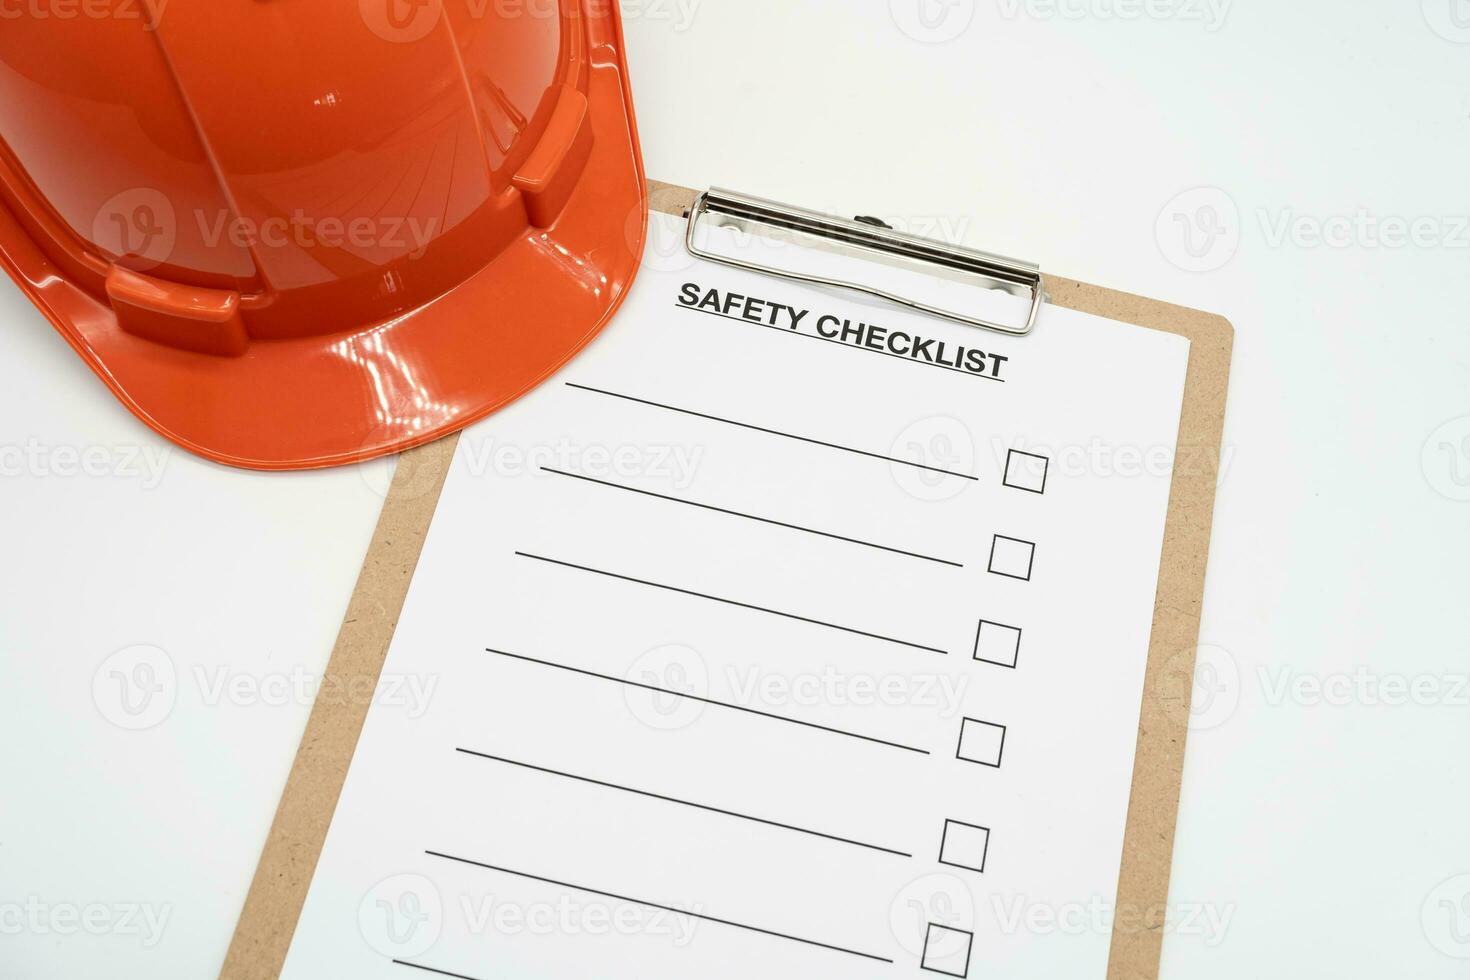 tom checklista papper under säkerhet granska och risk verifiering. säkerhet checklista form med hård hatt eller säkerhet hatt. foto